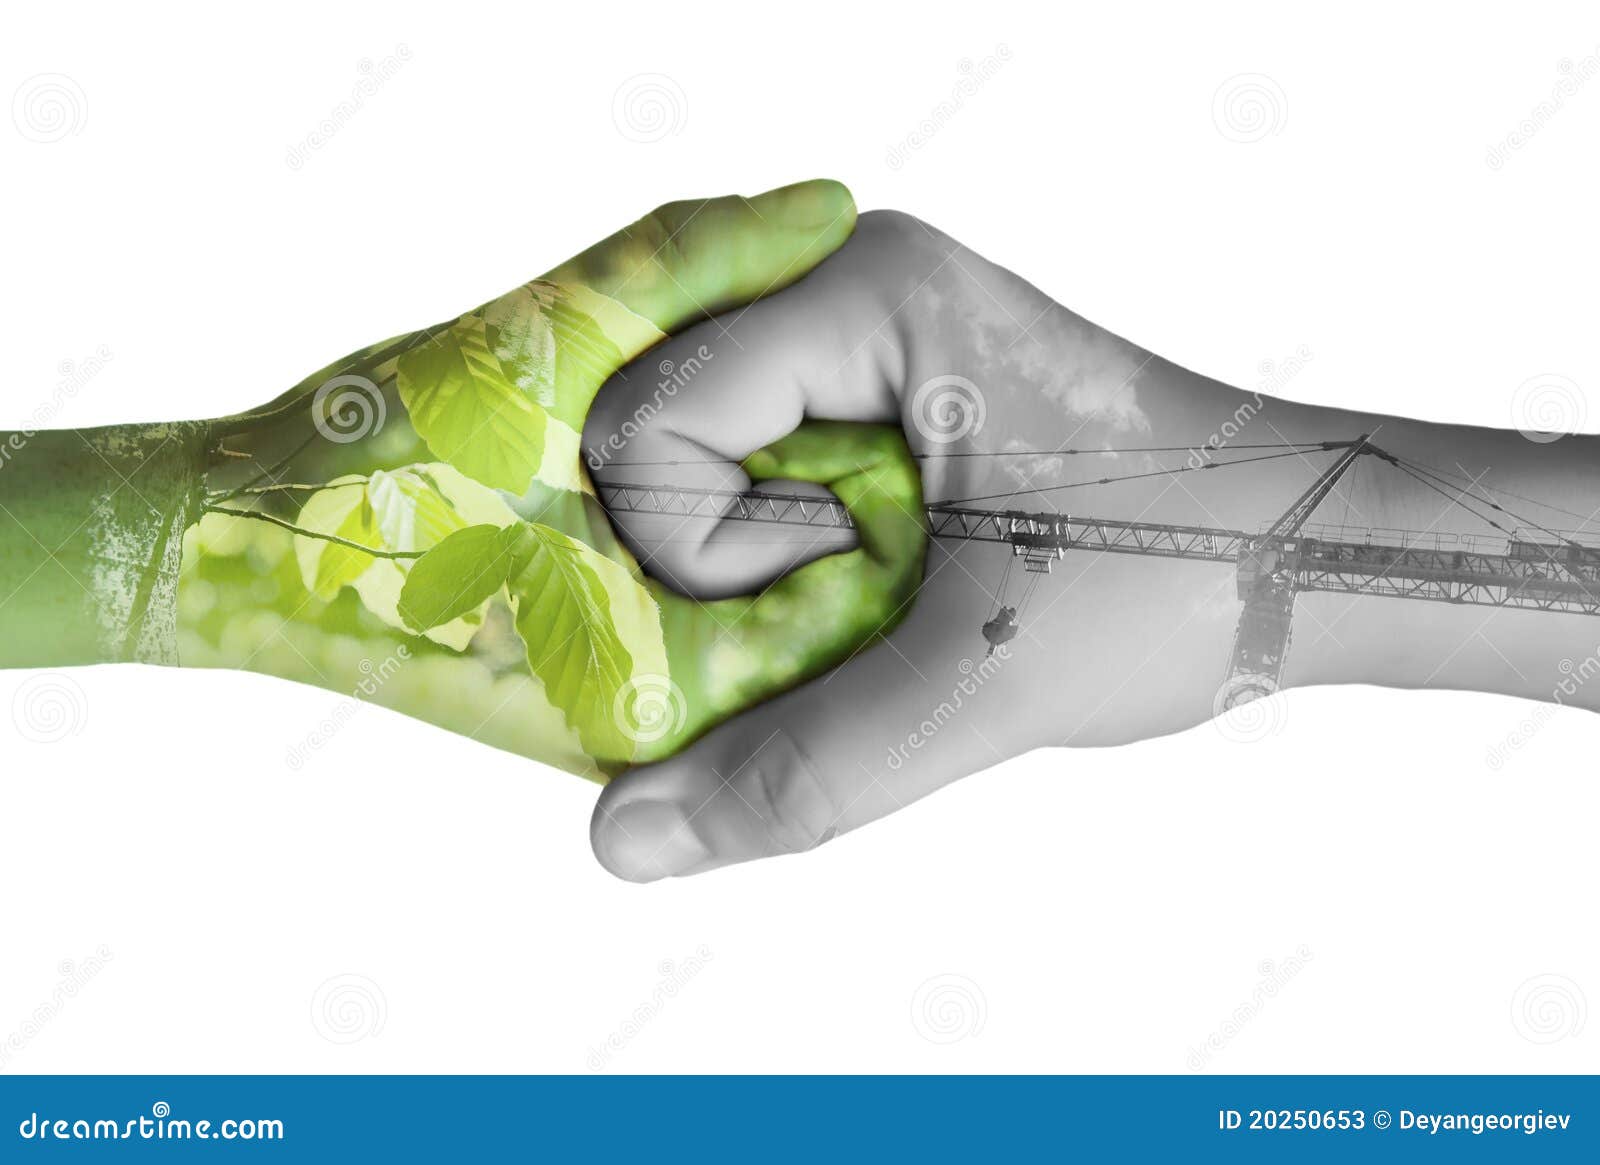 Руками портит. Рукопожатие человека и природы. Рукопожатие с природой. Экология в руках. Рукопожатие экология.